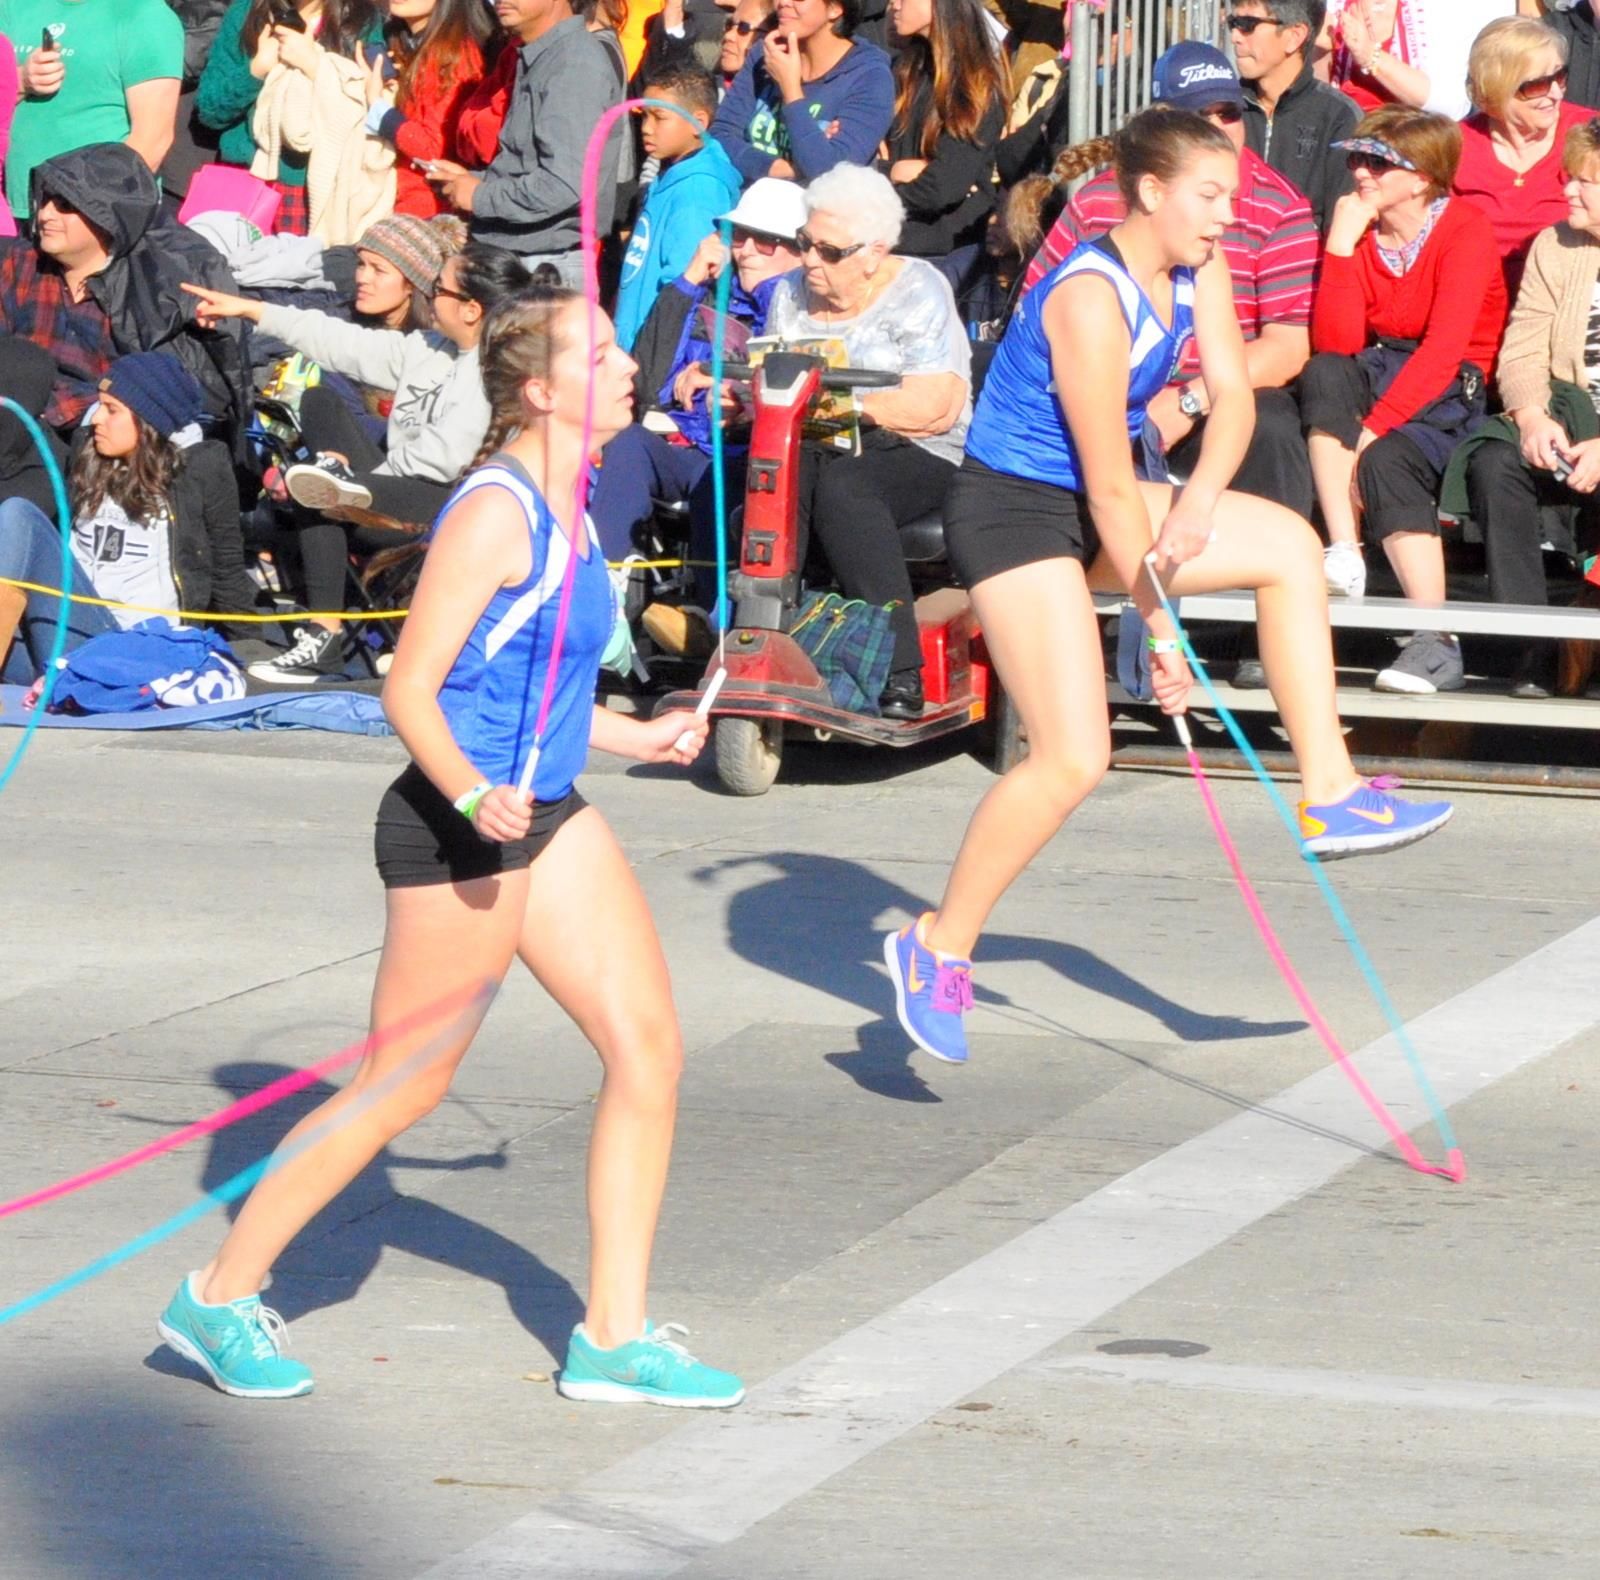 USA Jump Rope - Palpitating Panthers (a), Tournament of Roses Parade, Pasadena, CA - 2014-01-01